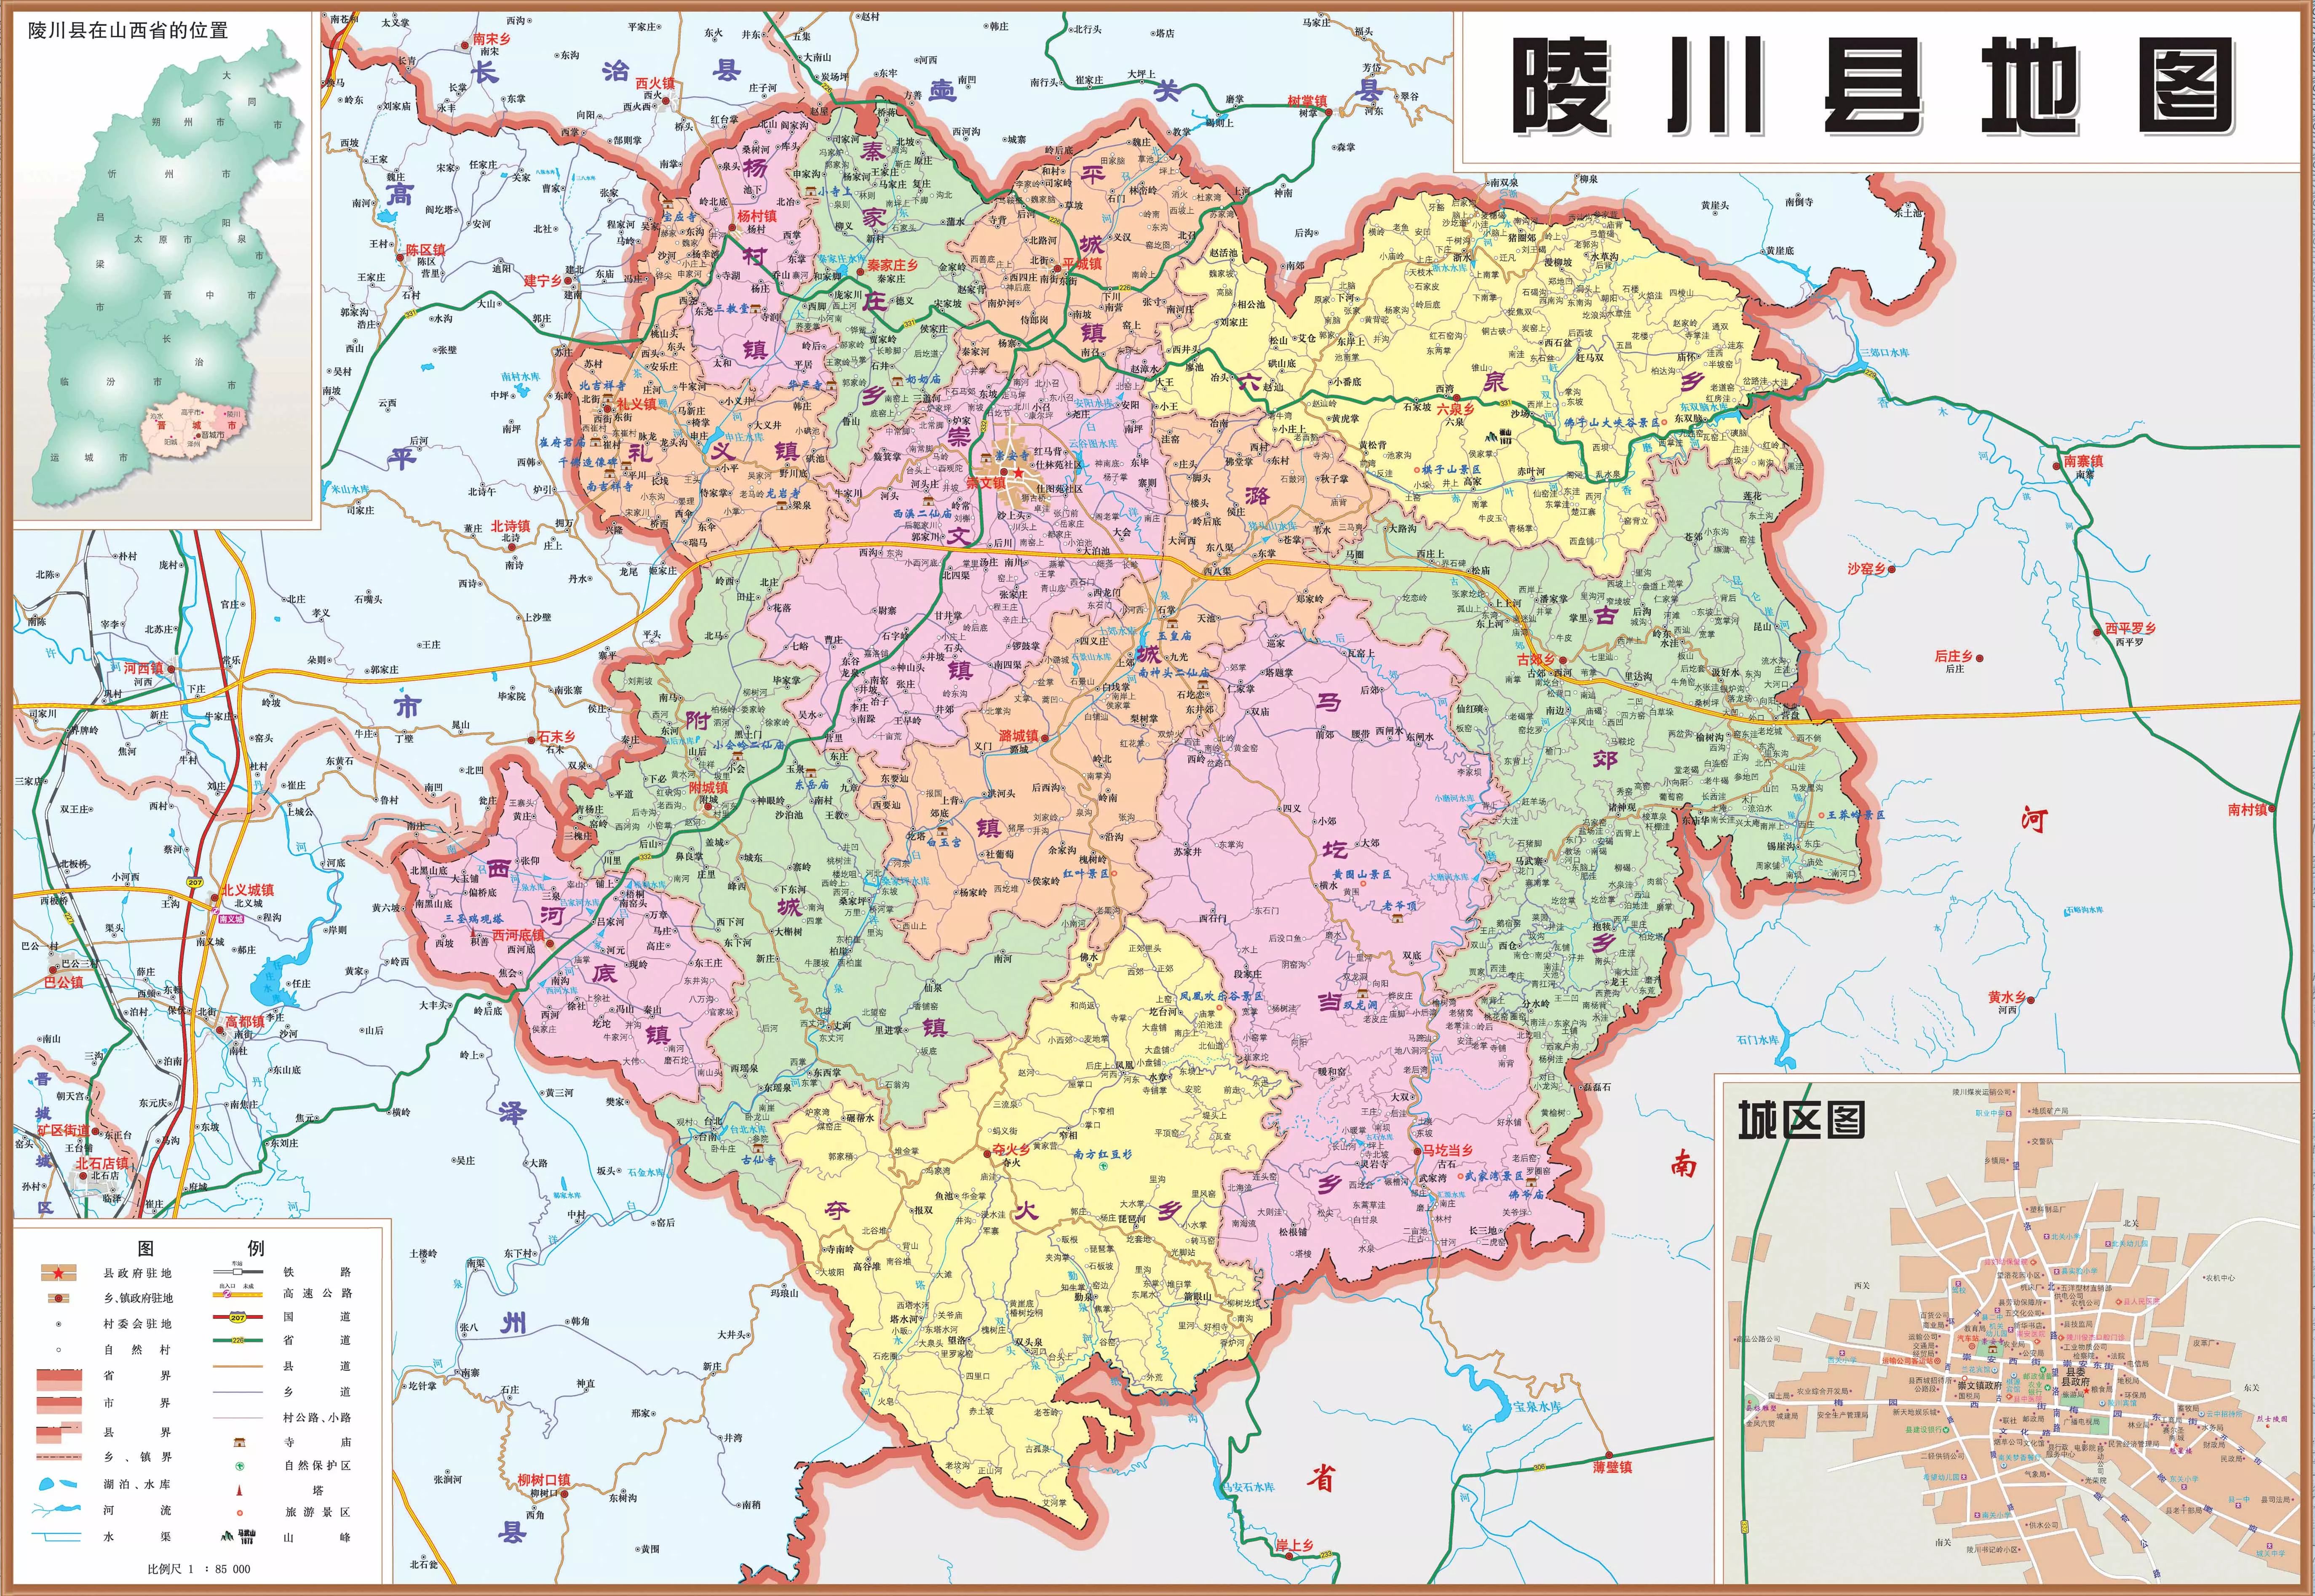 陵川县位于山西省东南部, 太行山南端最高地带,隶属于山西省晋城市,西